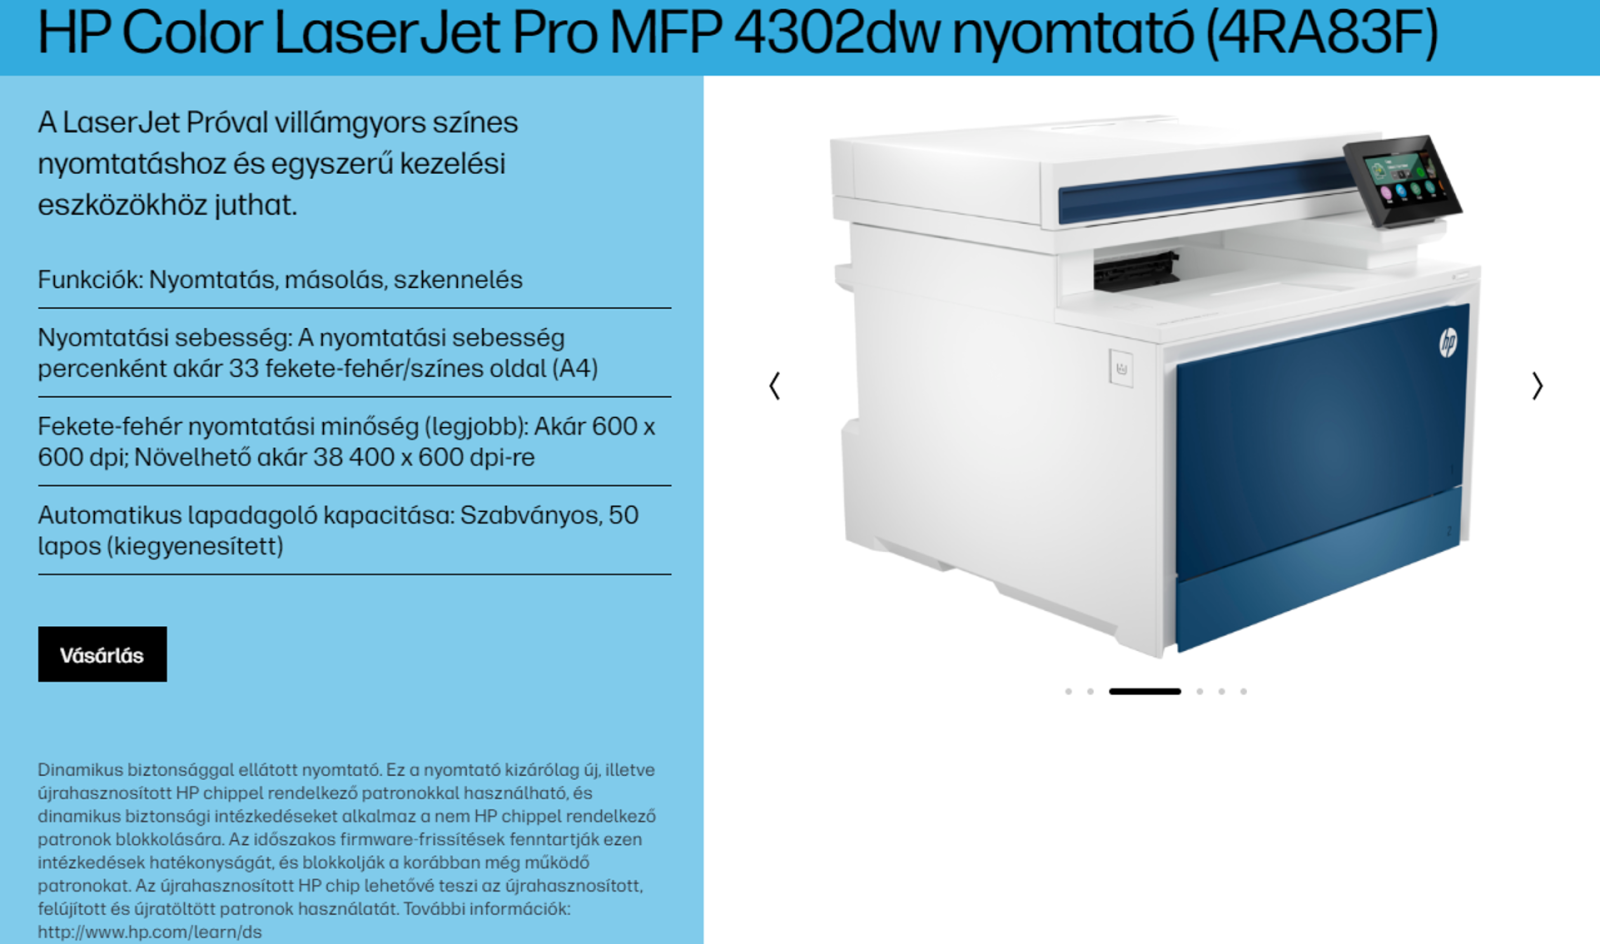 A HP Color LaserJet Pro MFP 4302dw nyomtató termékoldalának képernyőképe a "dinamikus biztonság" kifejezéssel. 